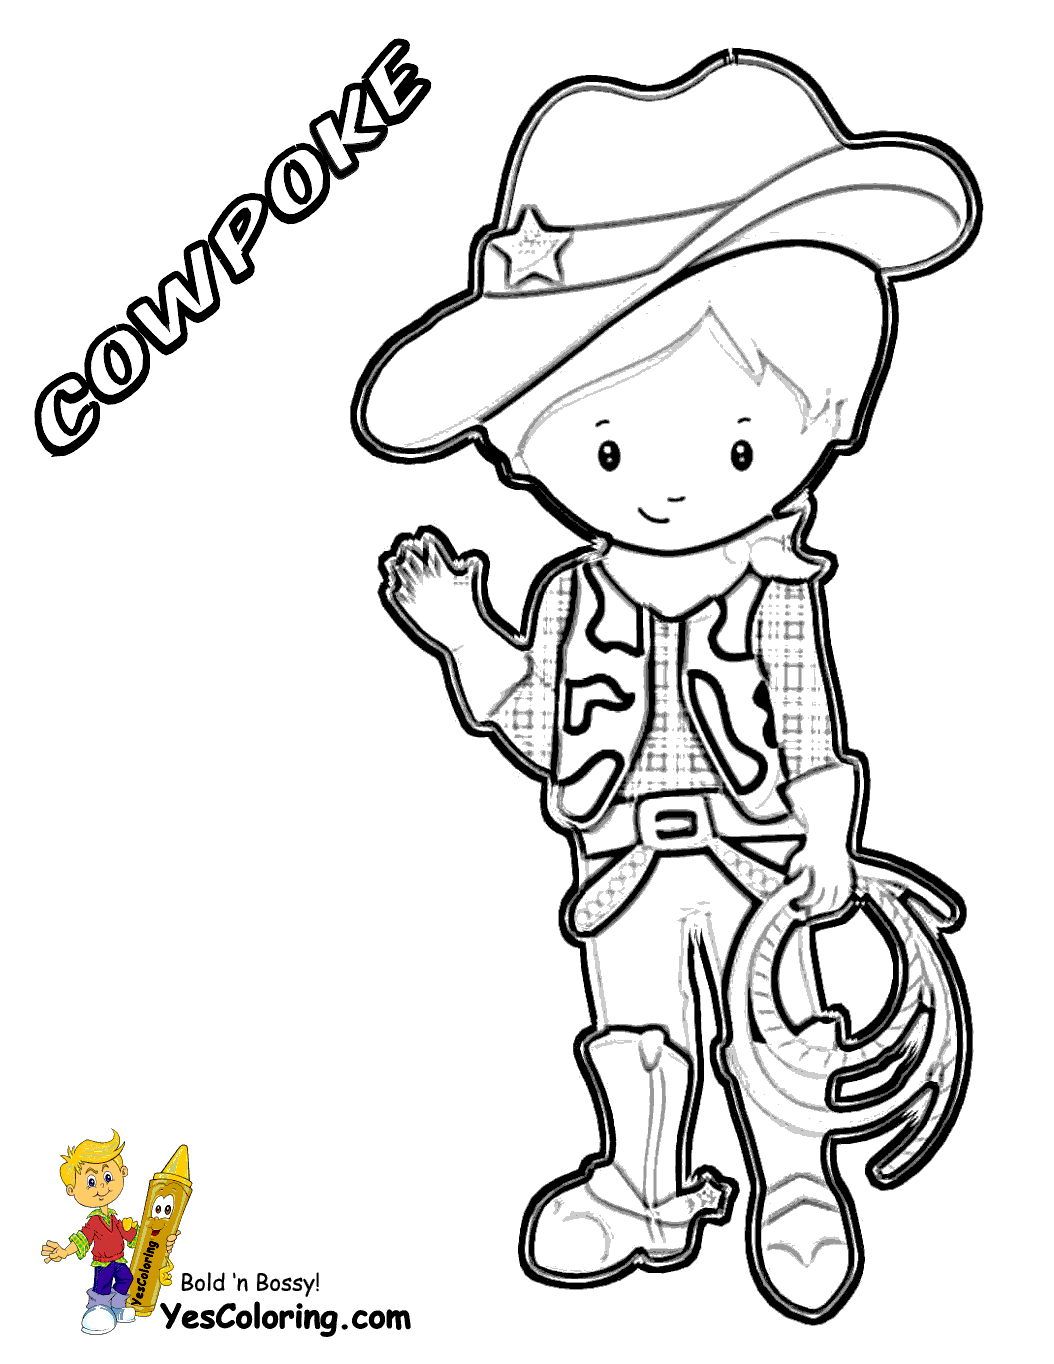 cowboy coloring pages cowboy coloring pages coloringpages1001com coloring cowboy pages 